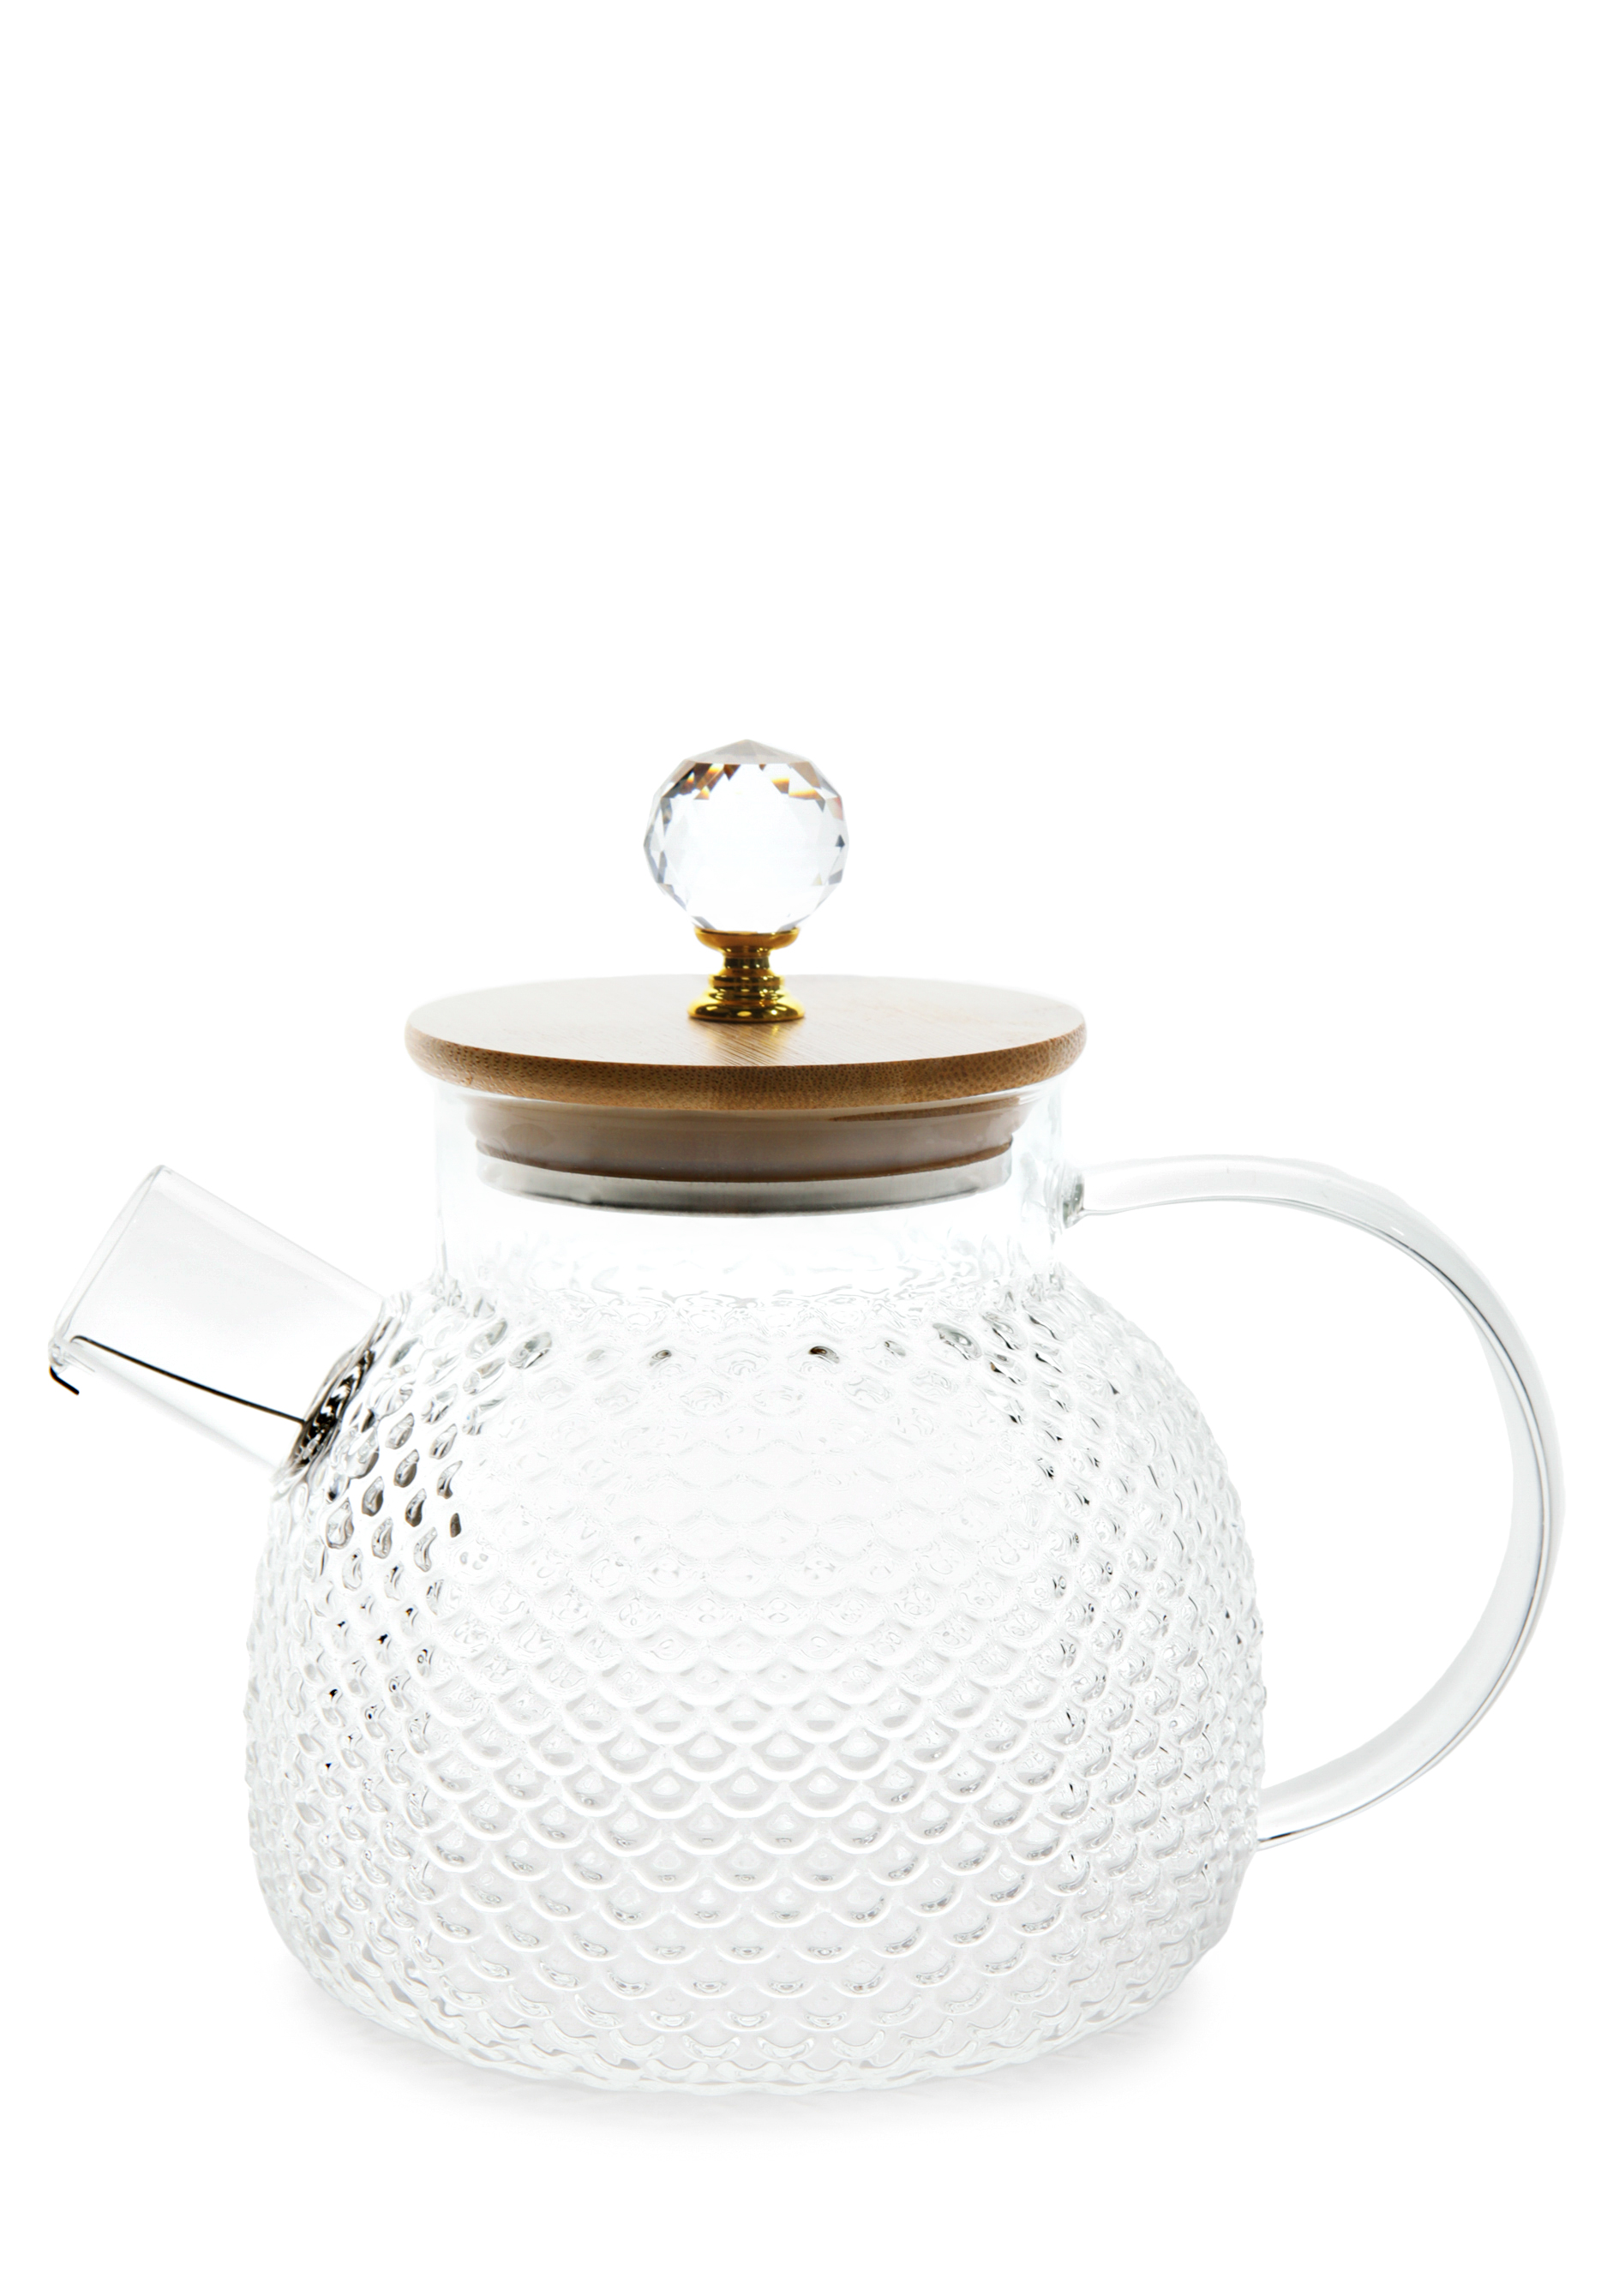 Заварочный чайник из боросиликатного стекла заварочный чайник laura ashley china rose 160 мл